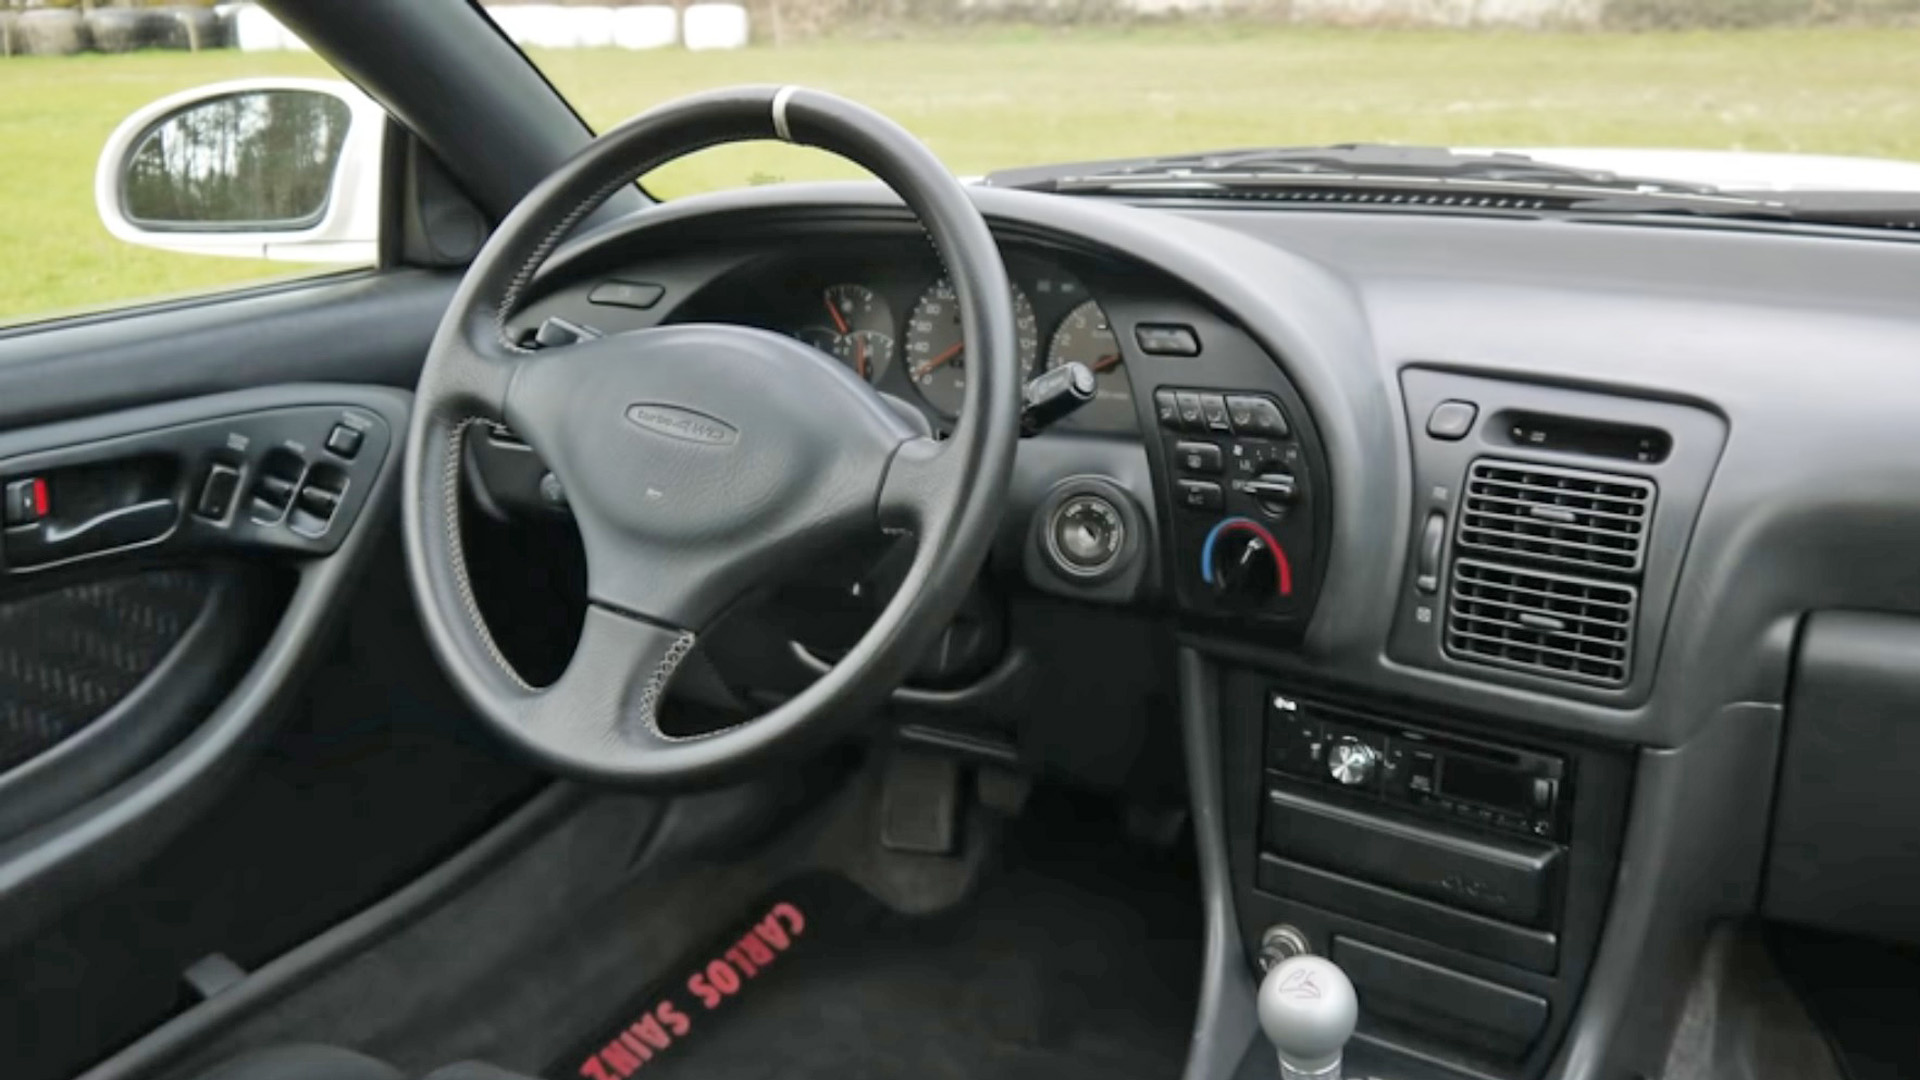 Toyota Celica 2 0 Turbo 4WD Carlos Sainz 5